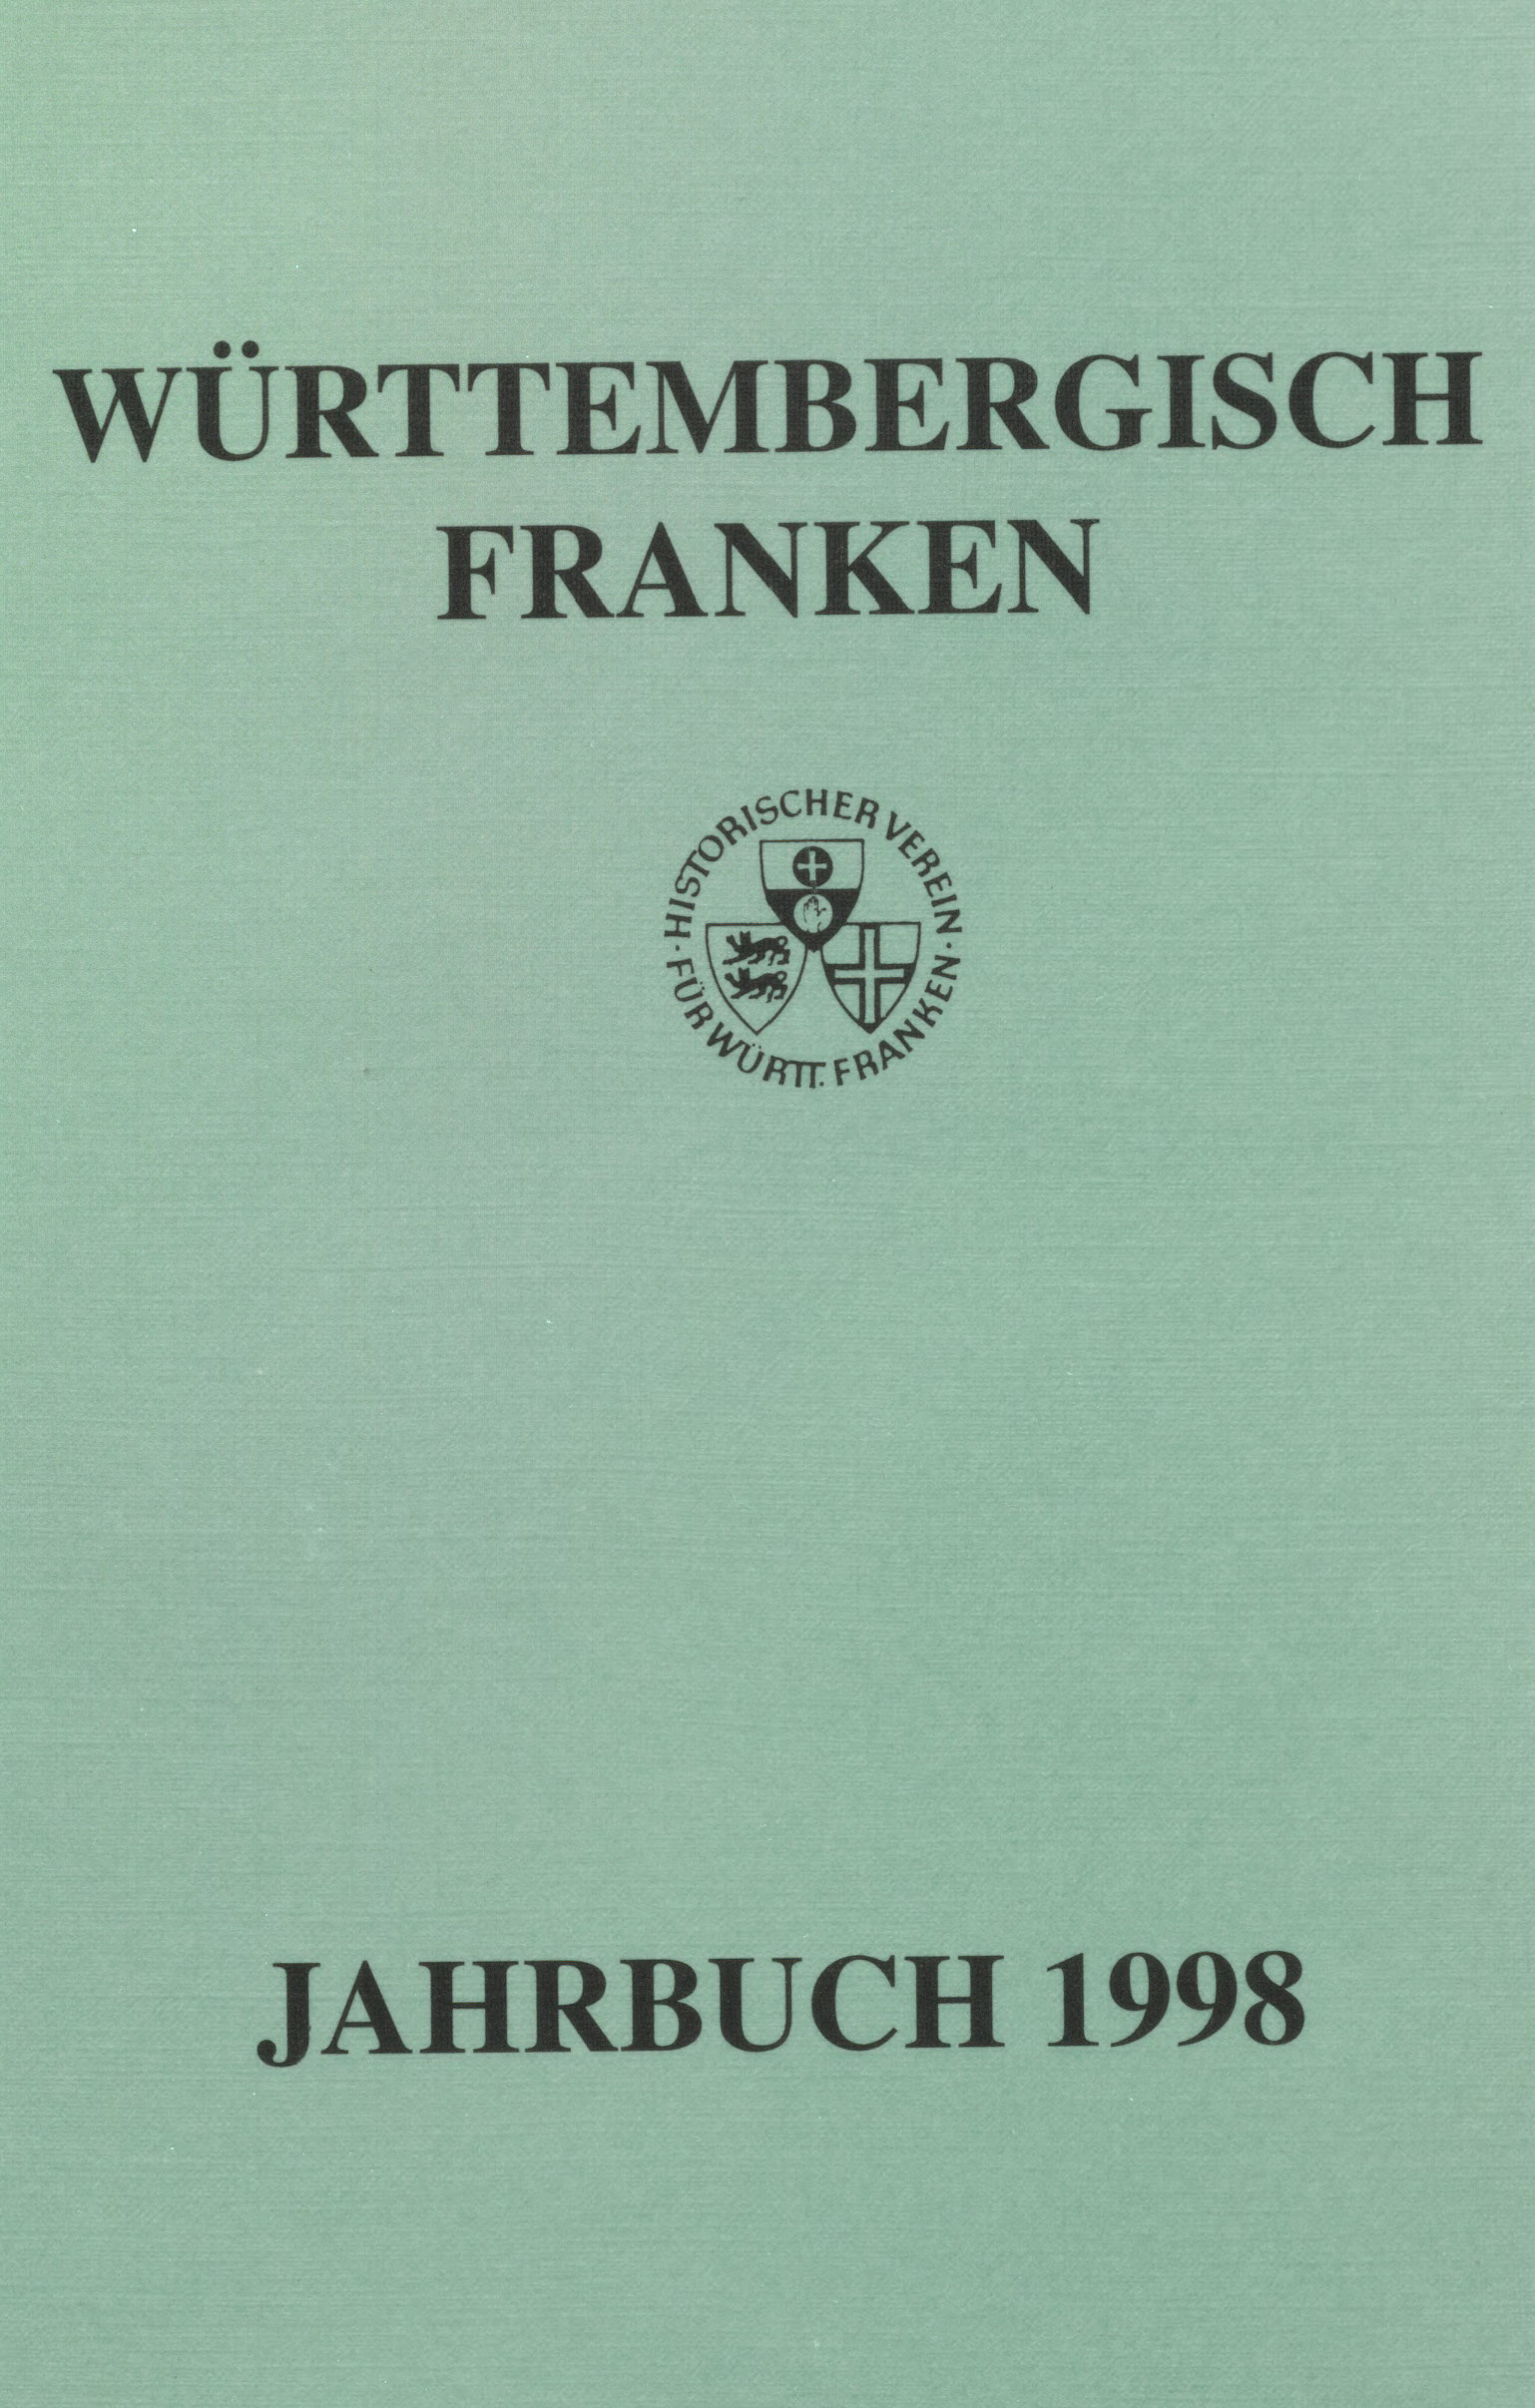                     Ansehen Bd. 82 (1998): Württembergisch Franken
                